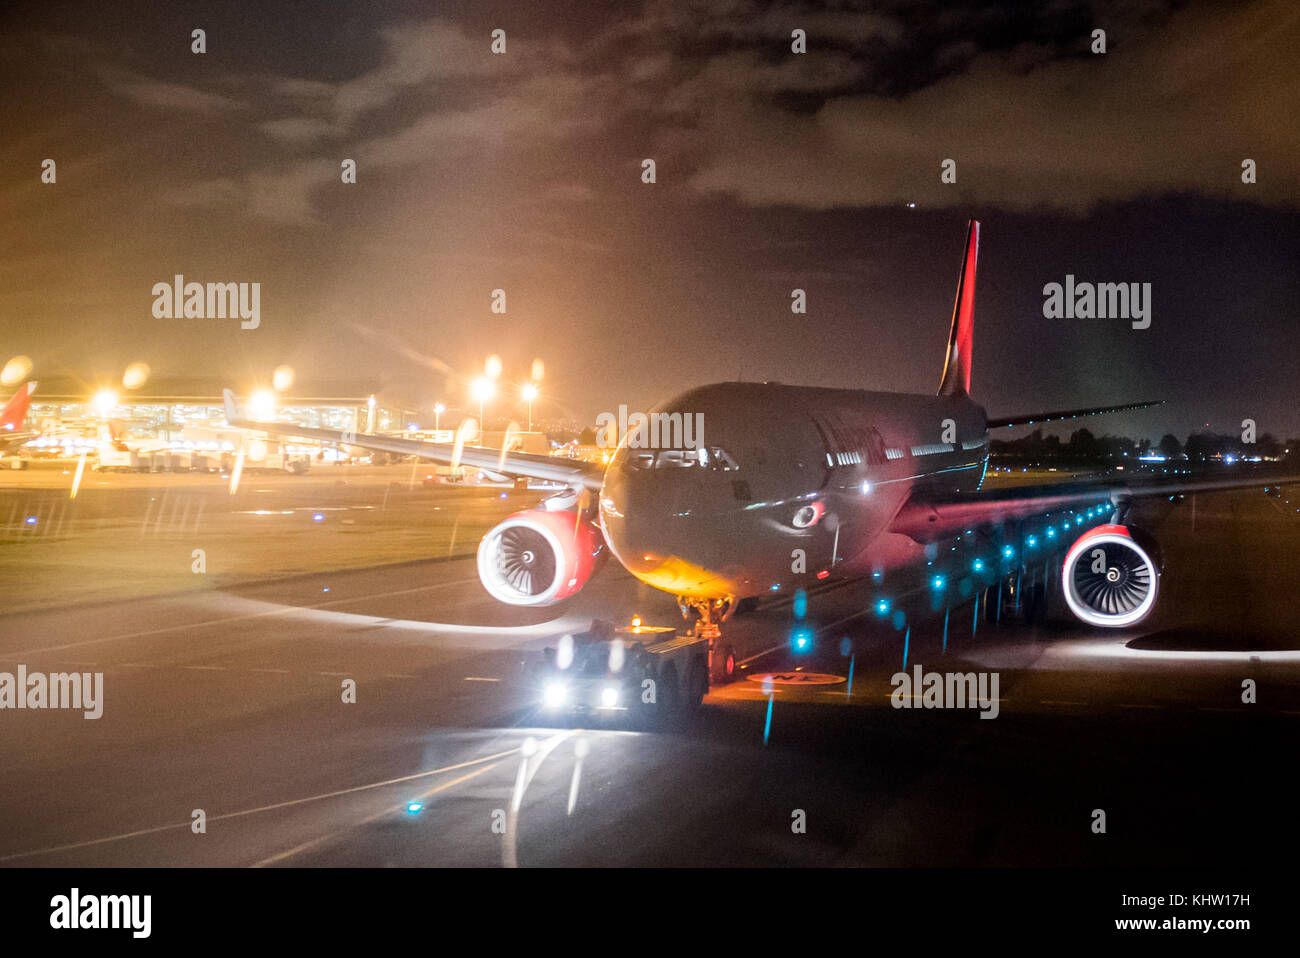 Un Airbus A330 de la aerolínea Avianca es remolcado hacia abajo una pista de rodaje en el aeropuerto internacional El Dorado de Bogotá, Colombia Foto de stock